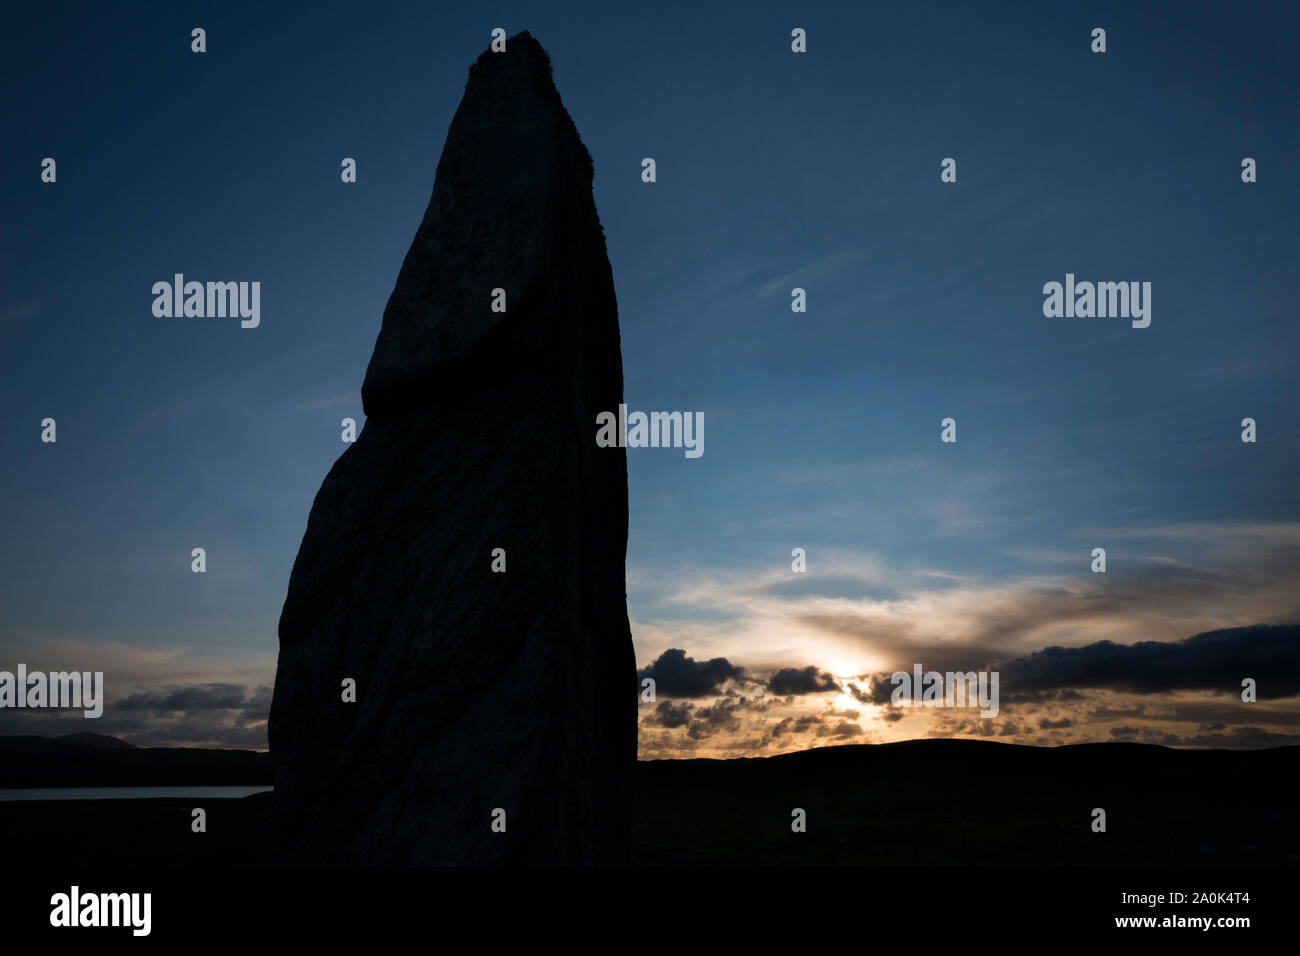 Einsame Stein wahrscheinlich verwendet der Sonne oder Mond ist von Menschen, die auf der Insel in 3000 v. Chr., Callanish Standing Stones, Isle of Lewis, Äußere Hebriden, S Stockfoto